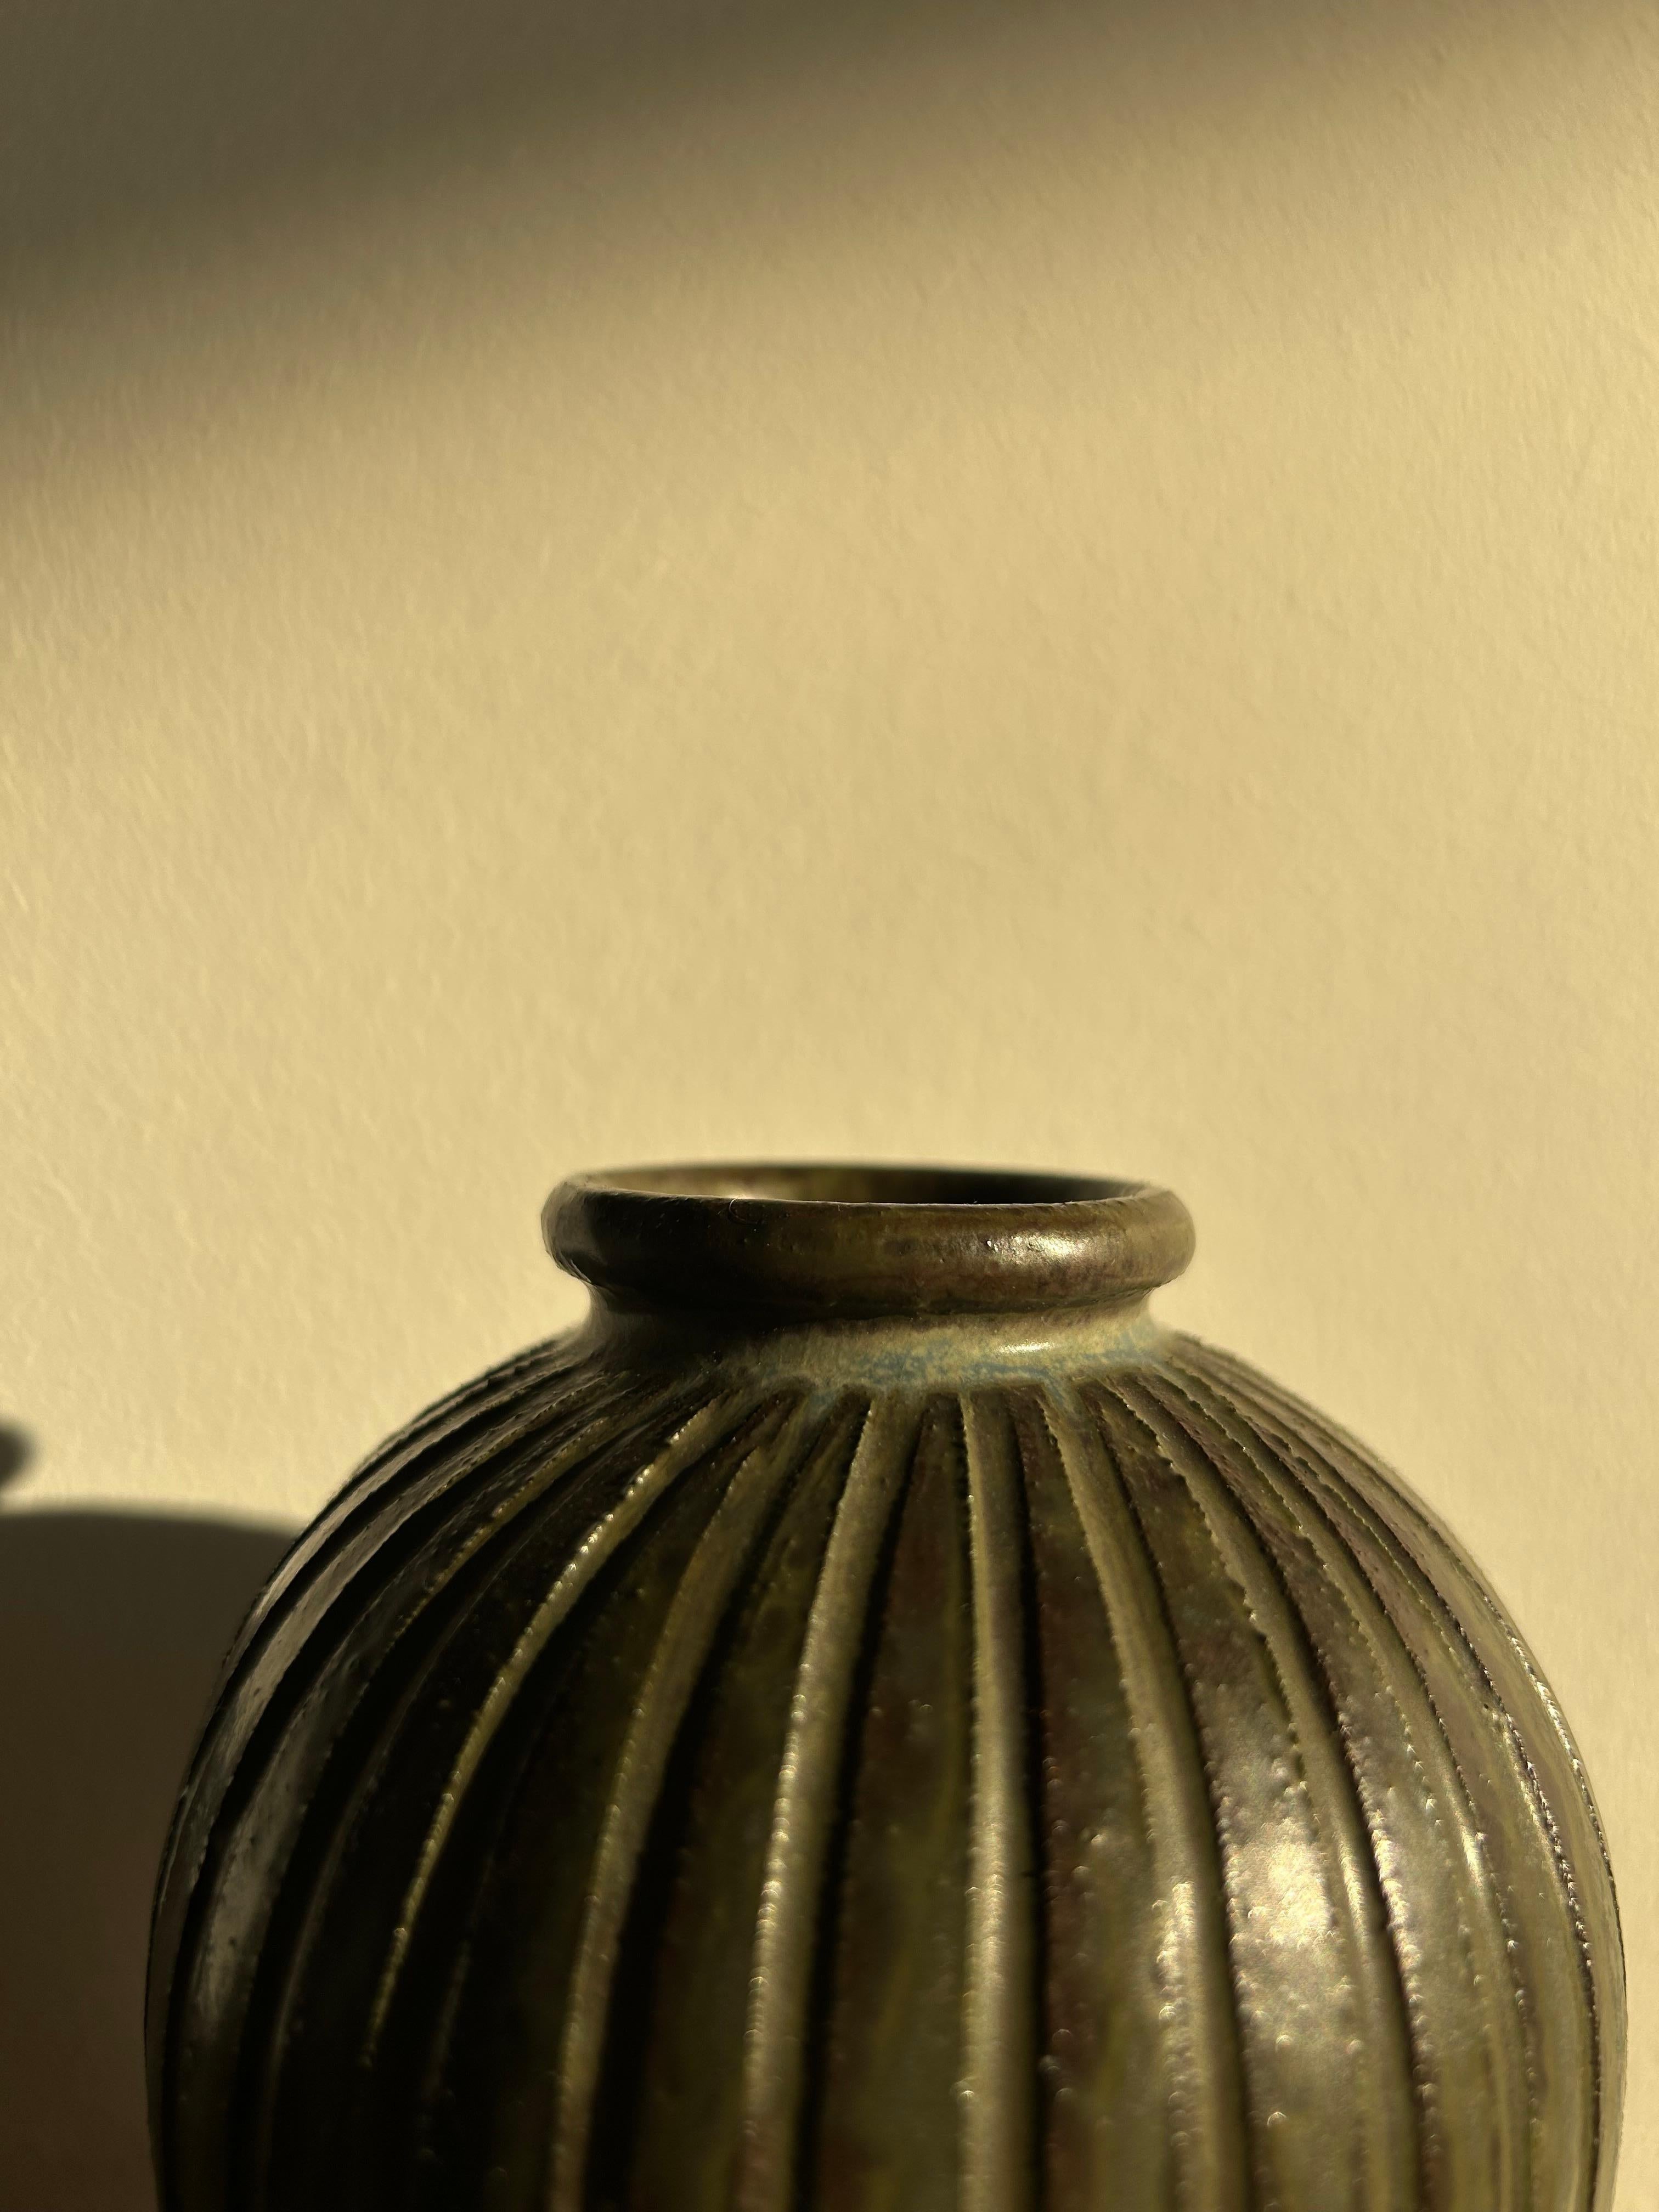 Arne Bang Vase Modell 124 In schöner grüner und brauner Glasur, hergestellt vom dänischen Künstler Arne Bang in den 1940er Jahren.

Die Vase ist in gutem Originalzustand ohne Risse oder Absplitterungen.

Arne Bang wurde als Bildhauer ausgebildet und